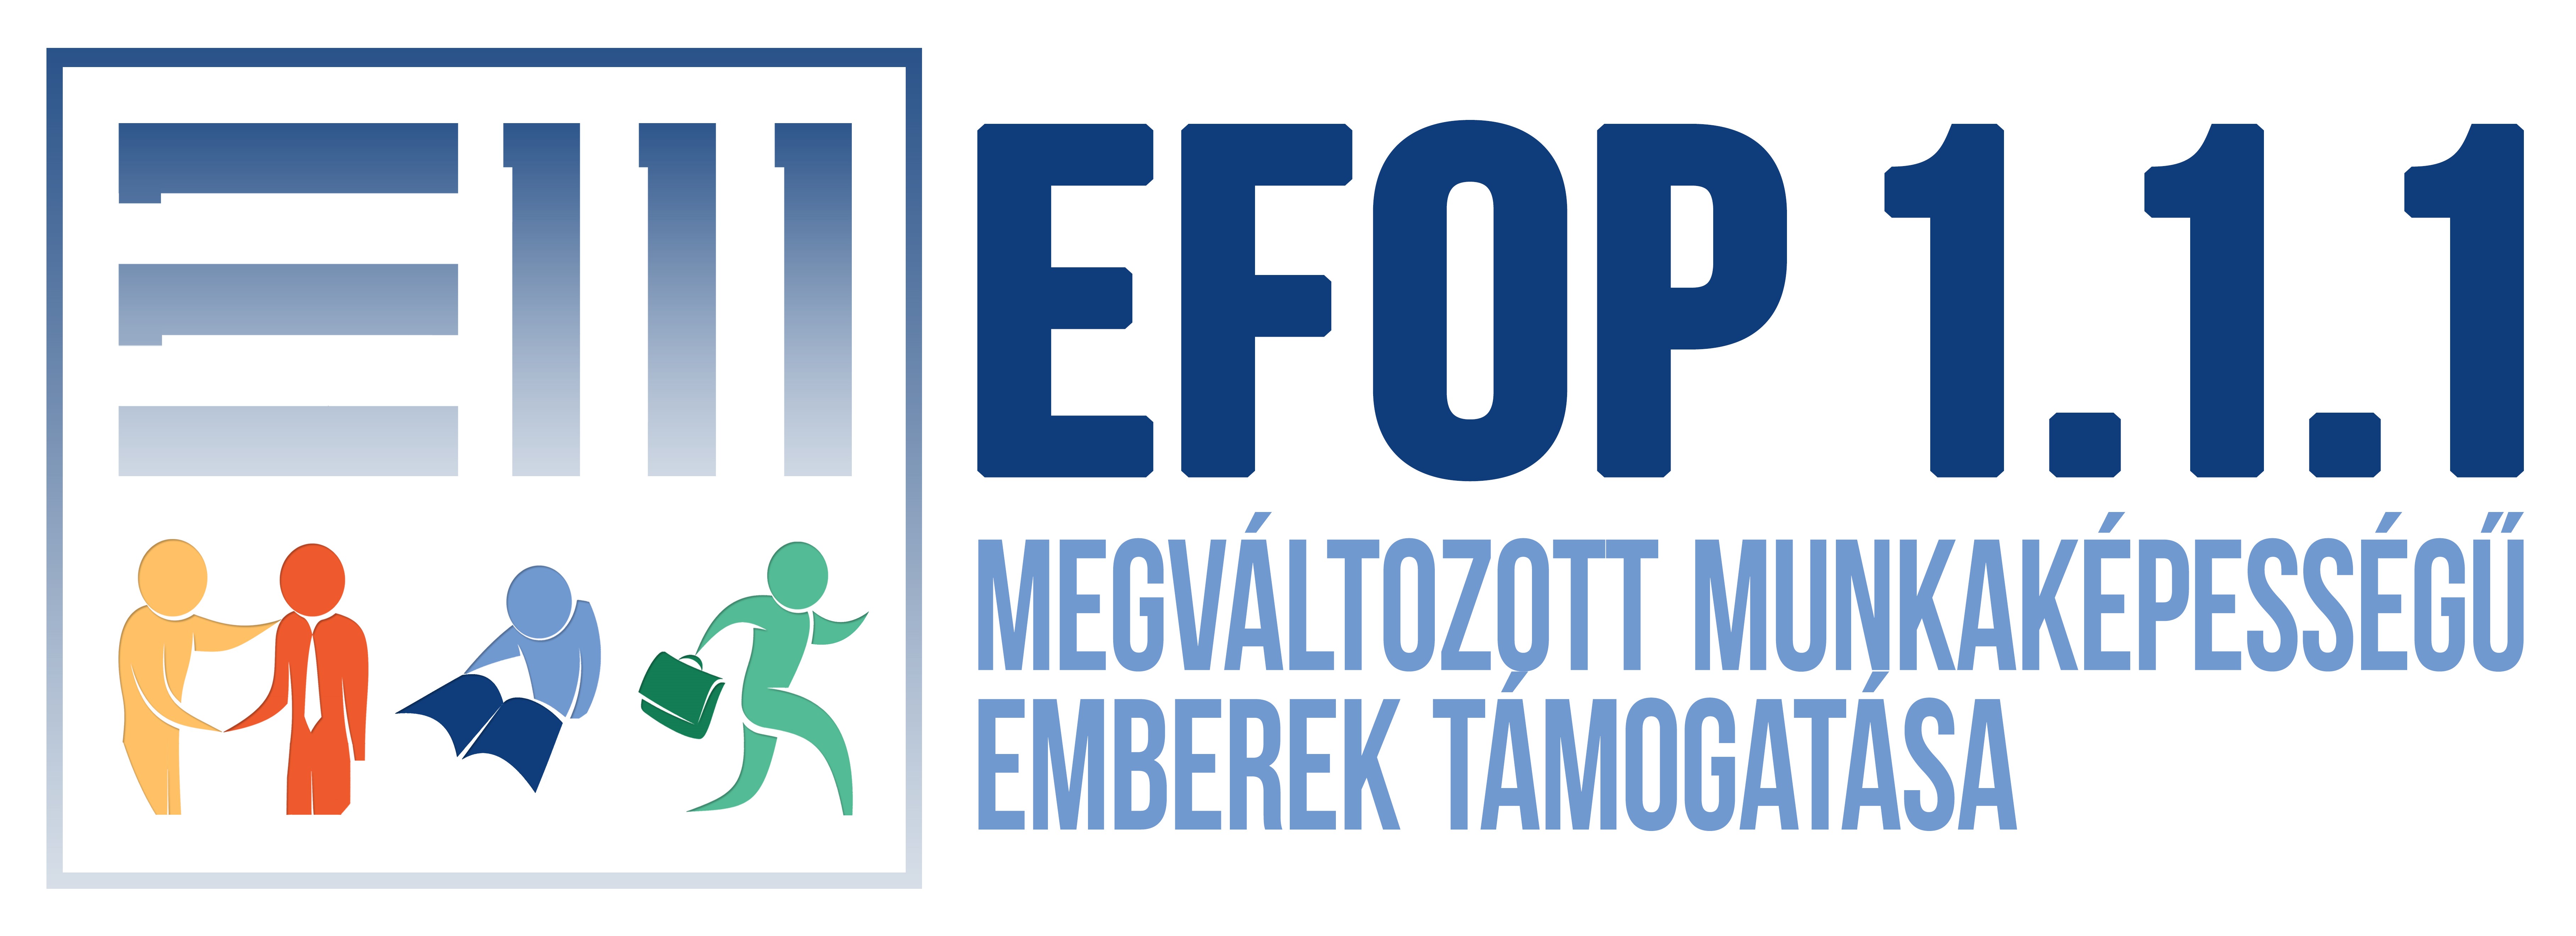 EFOP-1.1.1-15 Megváltozott munkaképességű emberek támogatása projekt logója